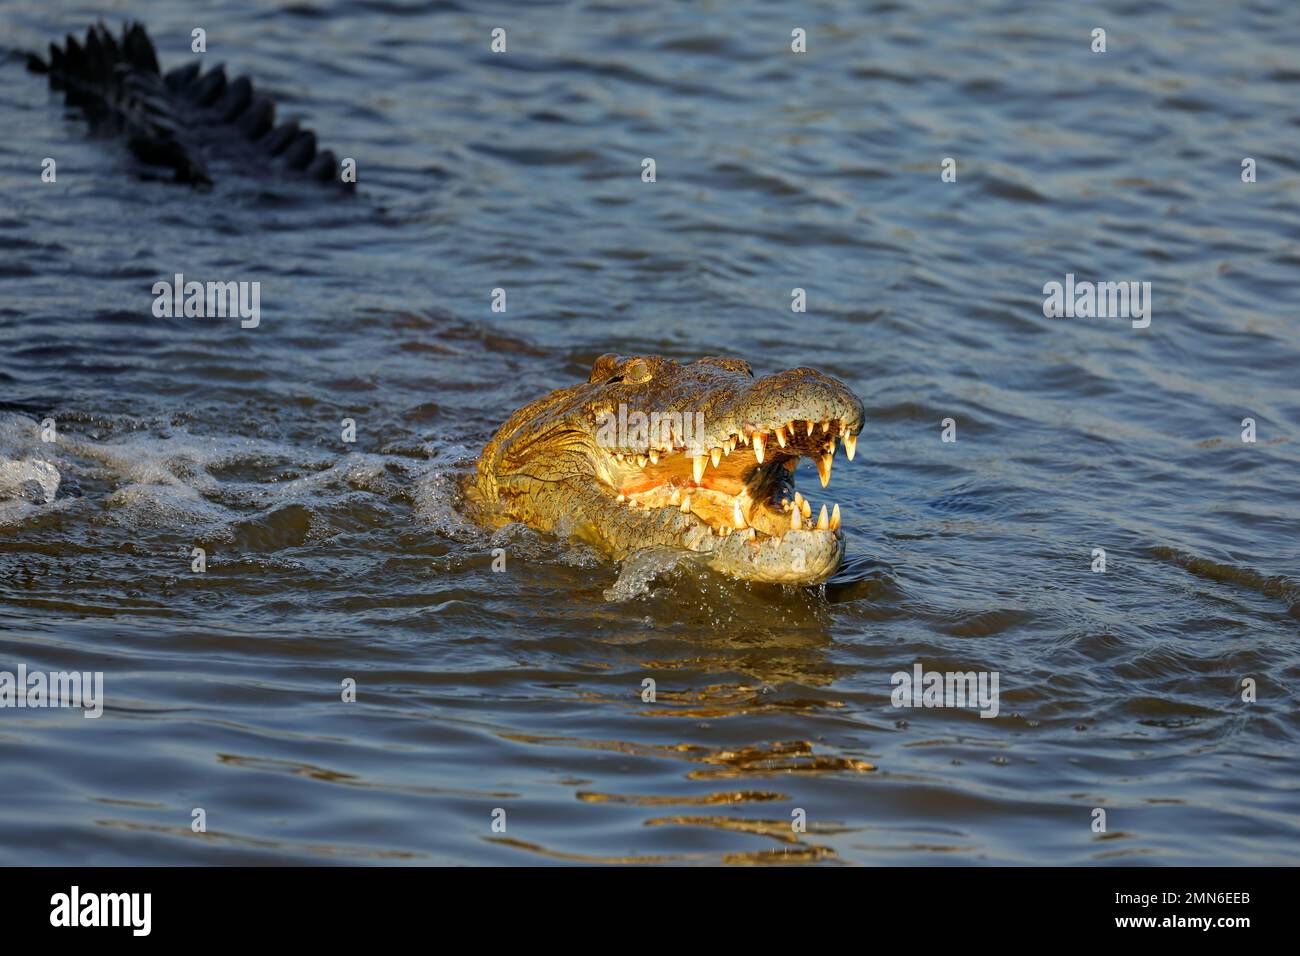 Gran cocodrilo del Nilo (Crocodylus niloticus) con mandíbulas abiertas en el agua, Parque Nacional Kruger, Sudáfrica Foto de stock